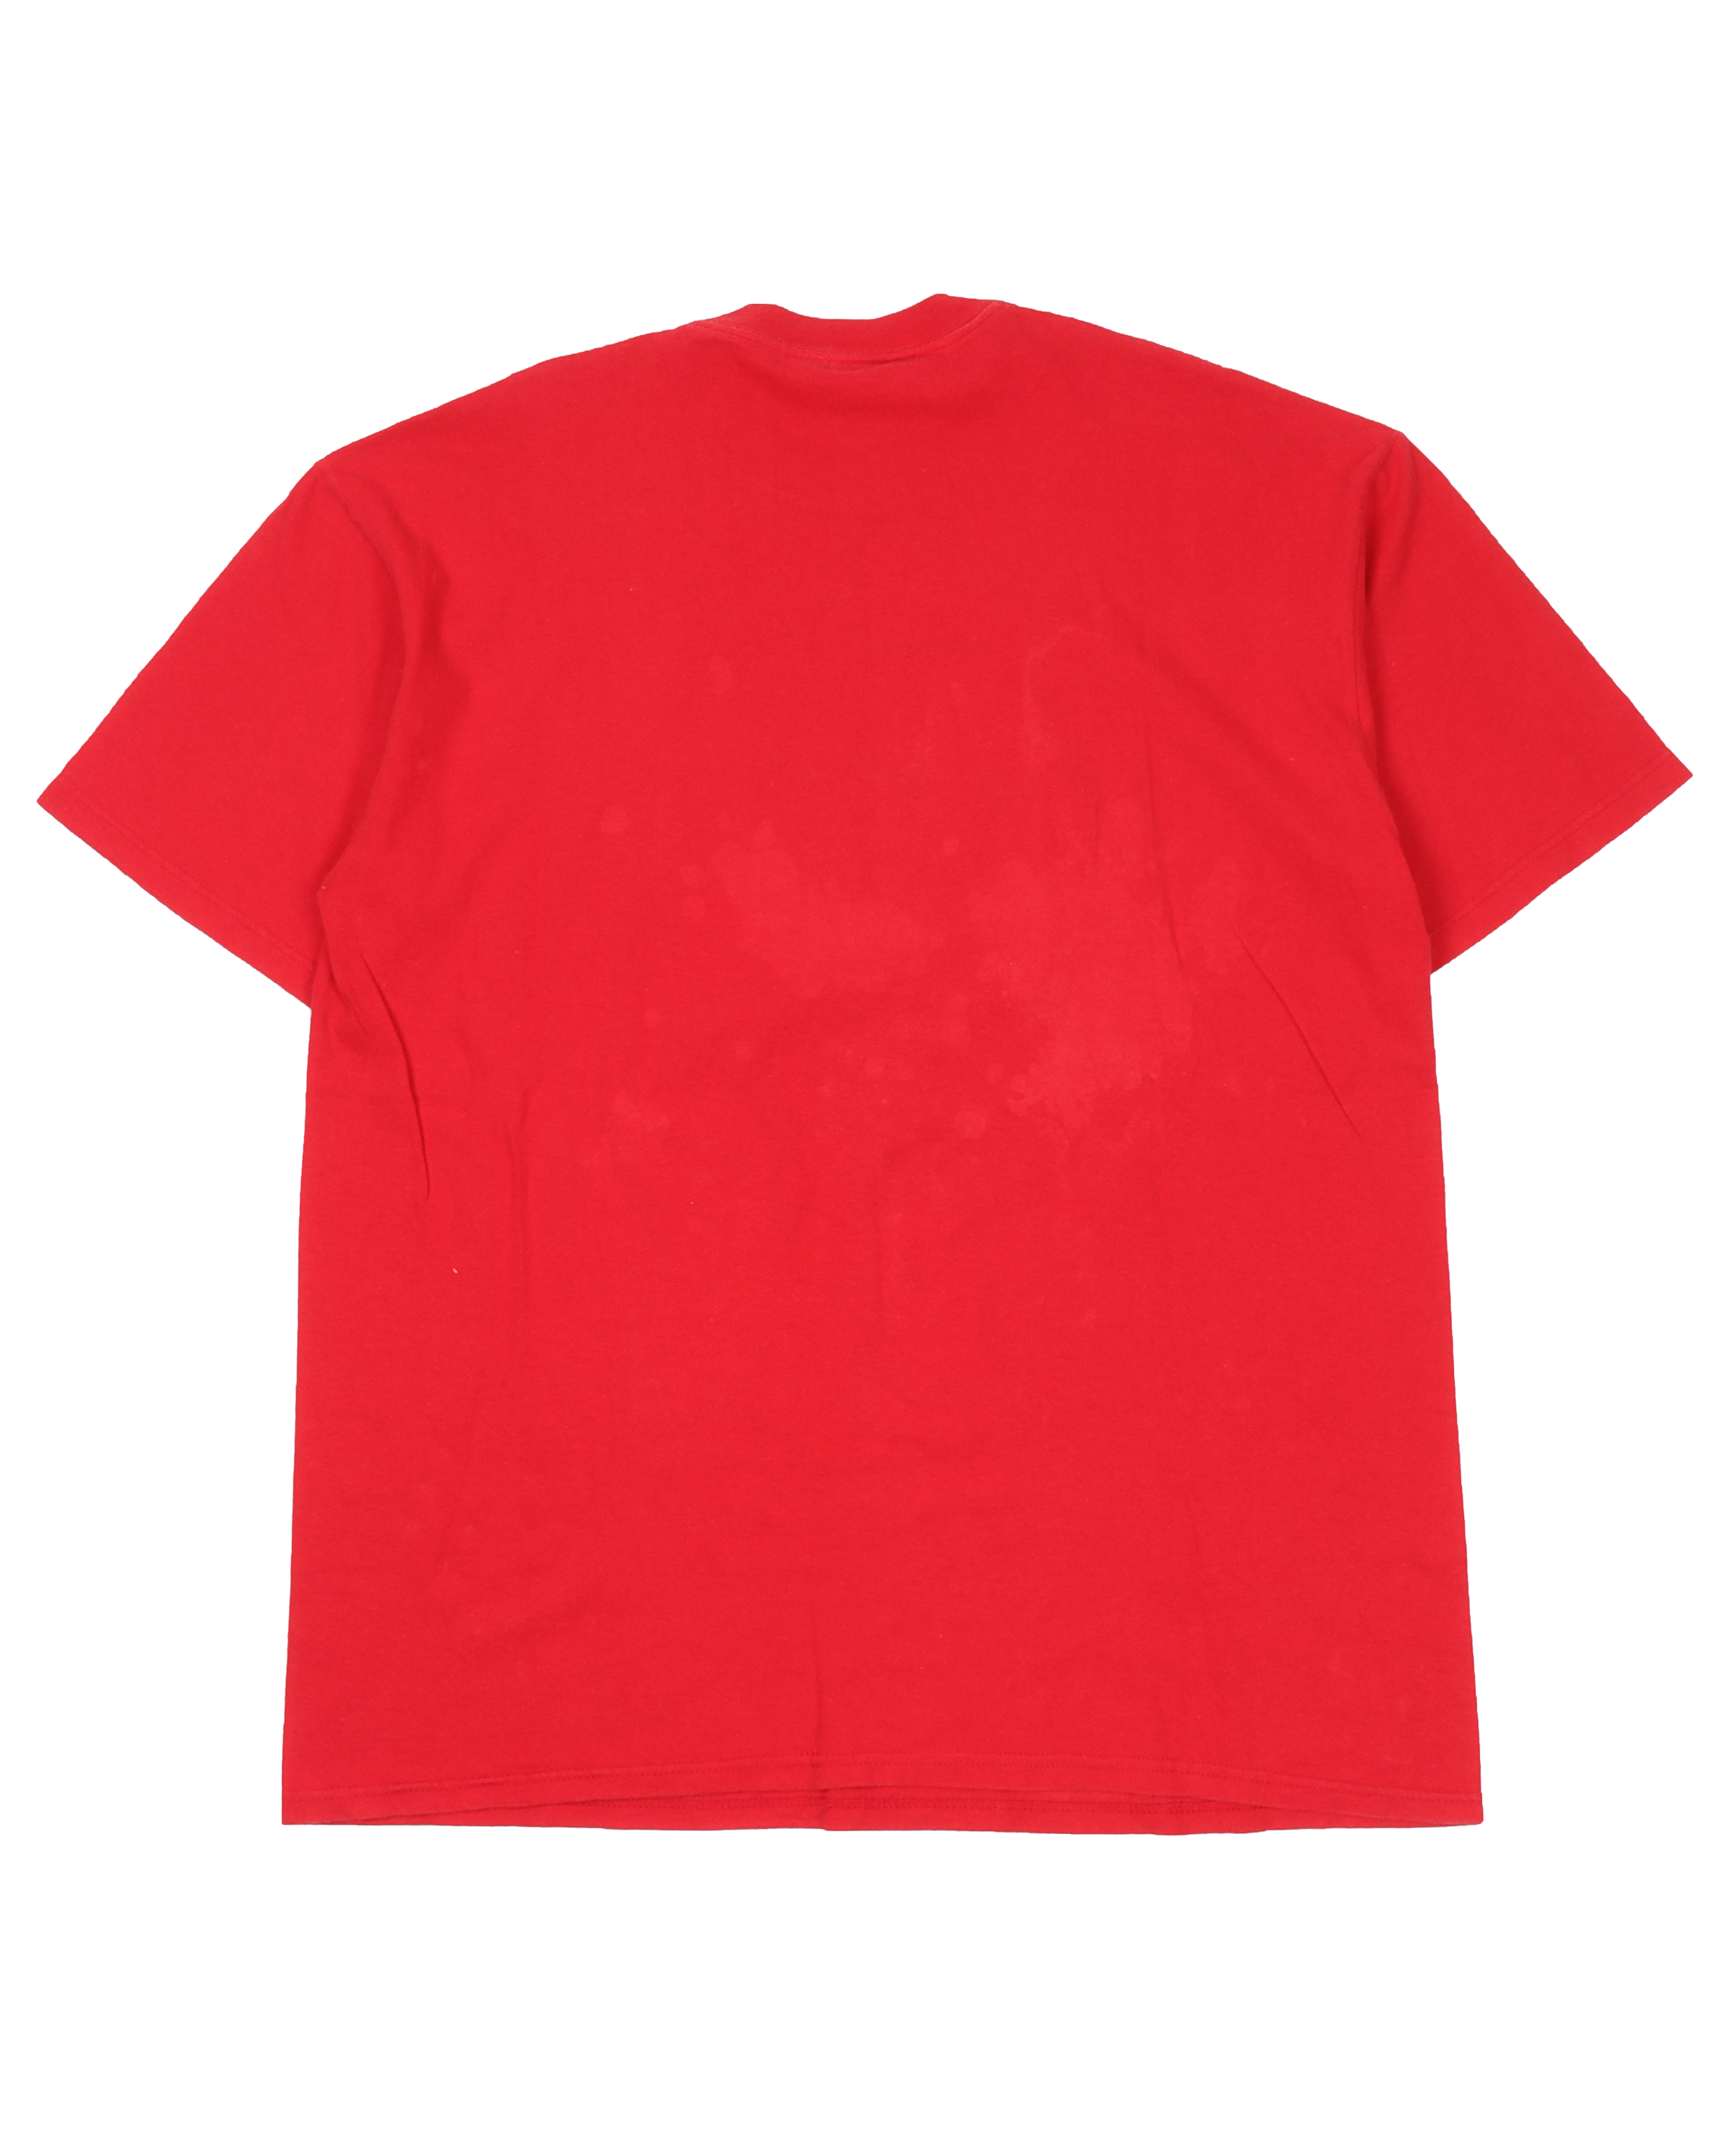 2001 Andy Warhol Brillo Pad T-Shirt